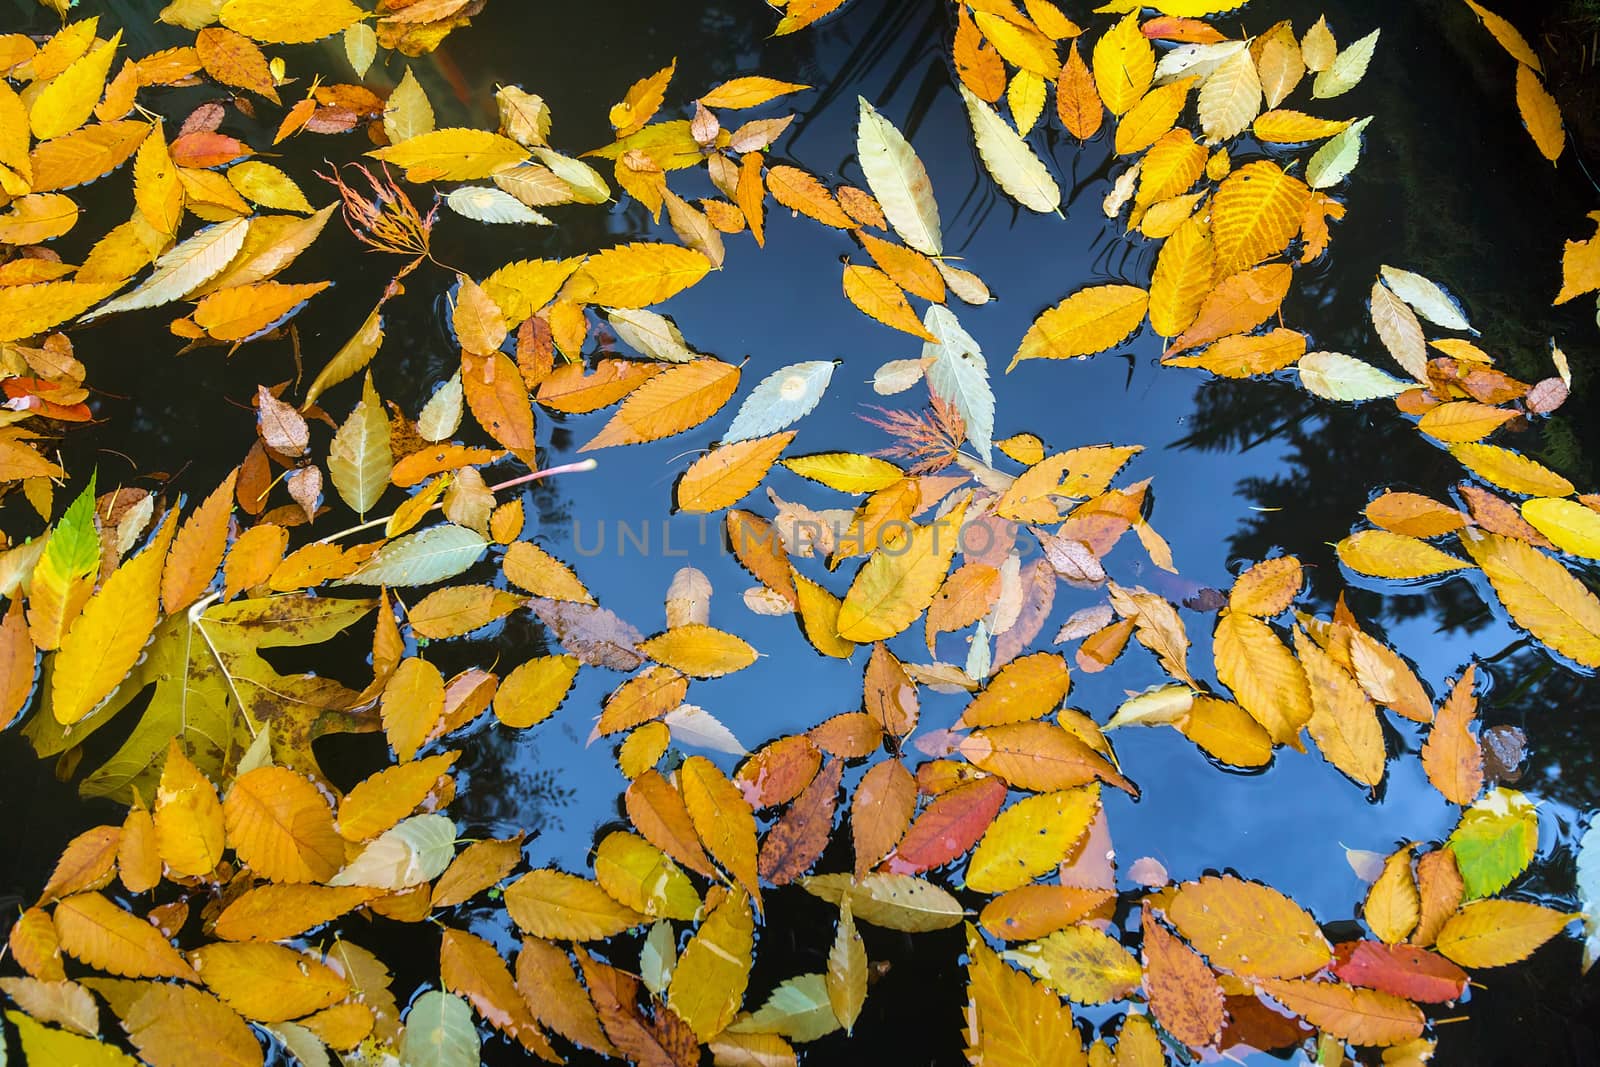 Fallen Autumn Leaves in Garden Pond by jpldesigns